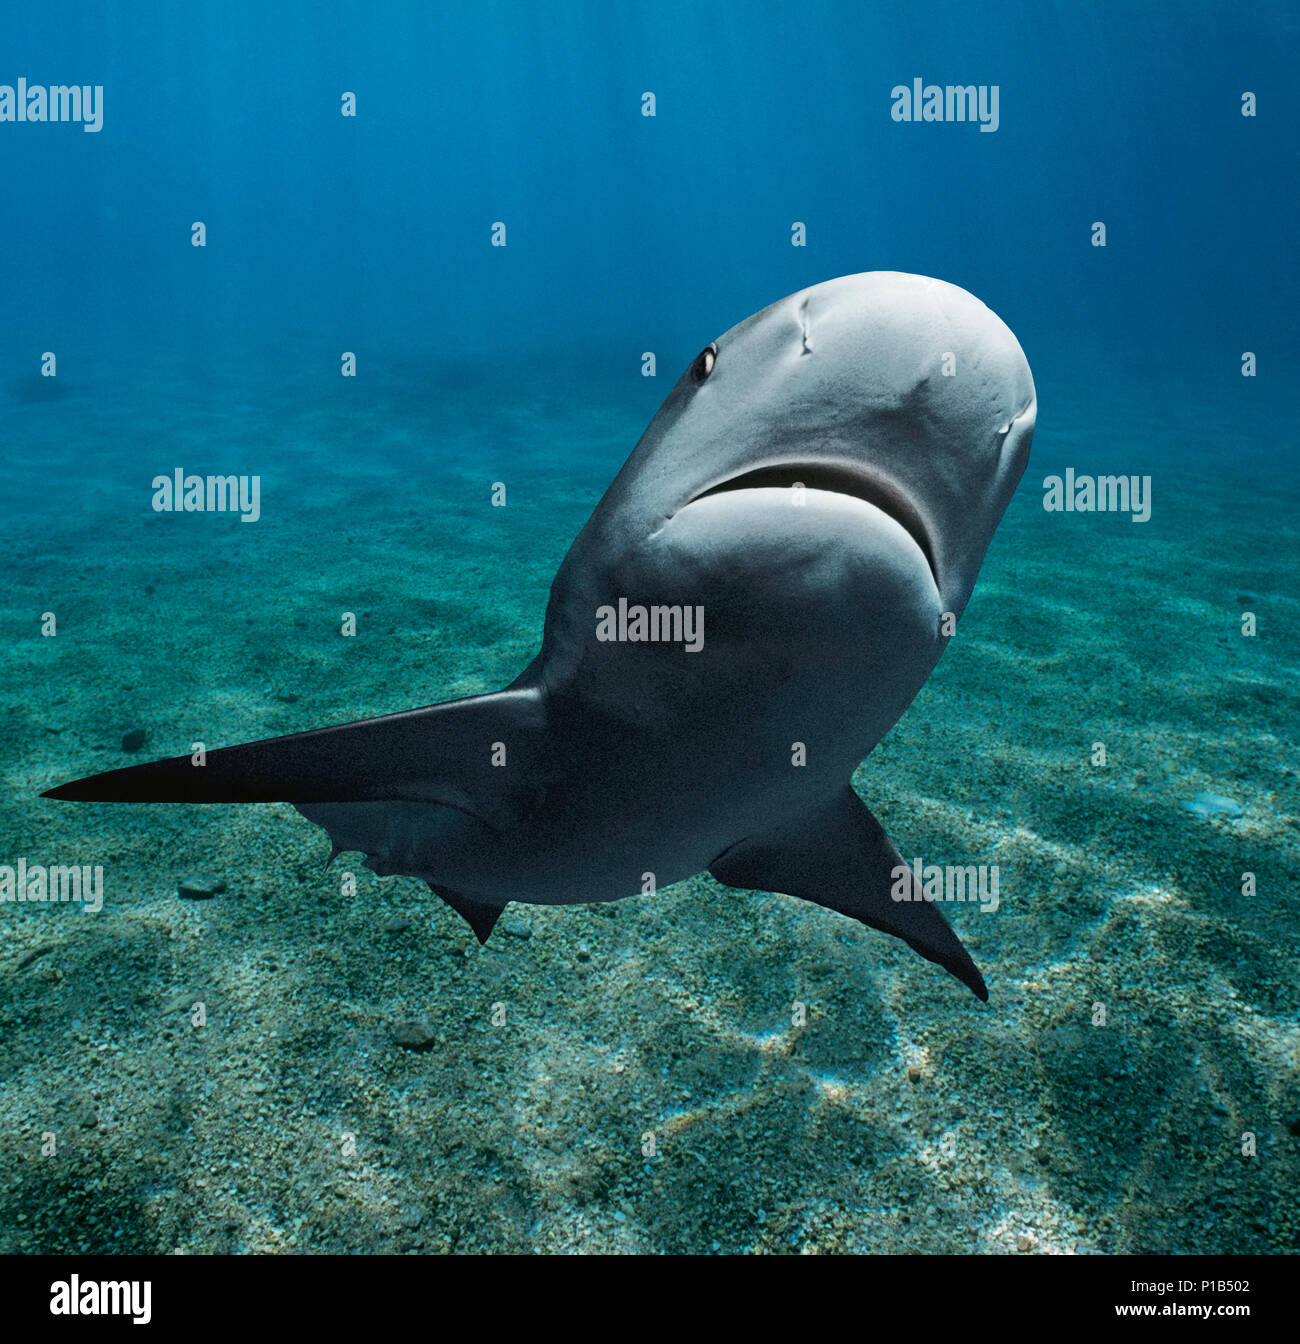 Karibische Riffhai (Carcharhinus perezi), Bahamas - Karibik. Bild digital geändert zu entfernen störende oder interessanter backgr hinzufügen Stockfoto